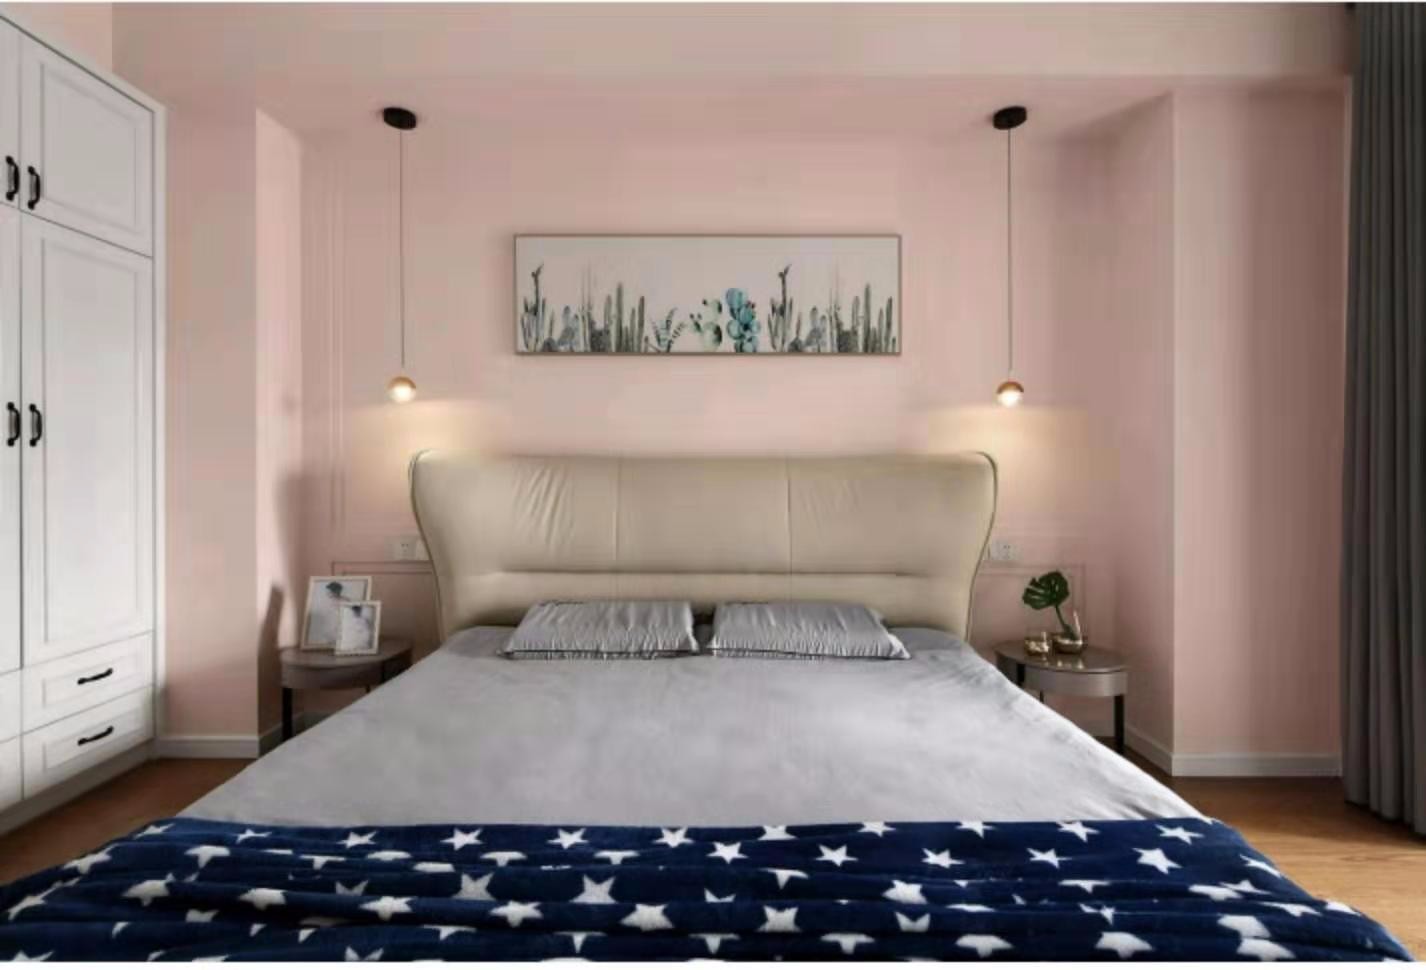 卧室饱和度低的藕粉色墙面,配上暖色系的灯光映衬,增加卧室的温度恰到